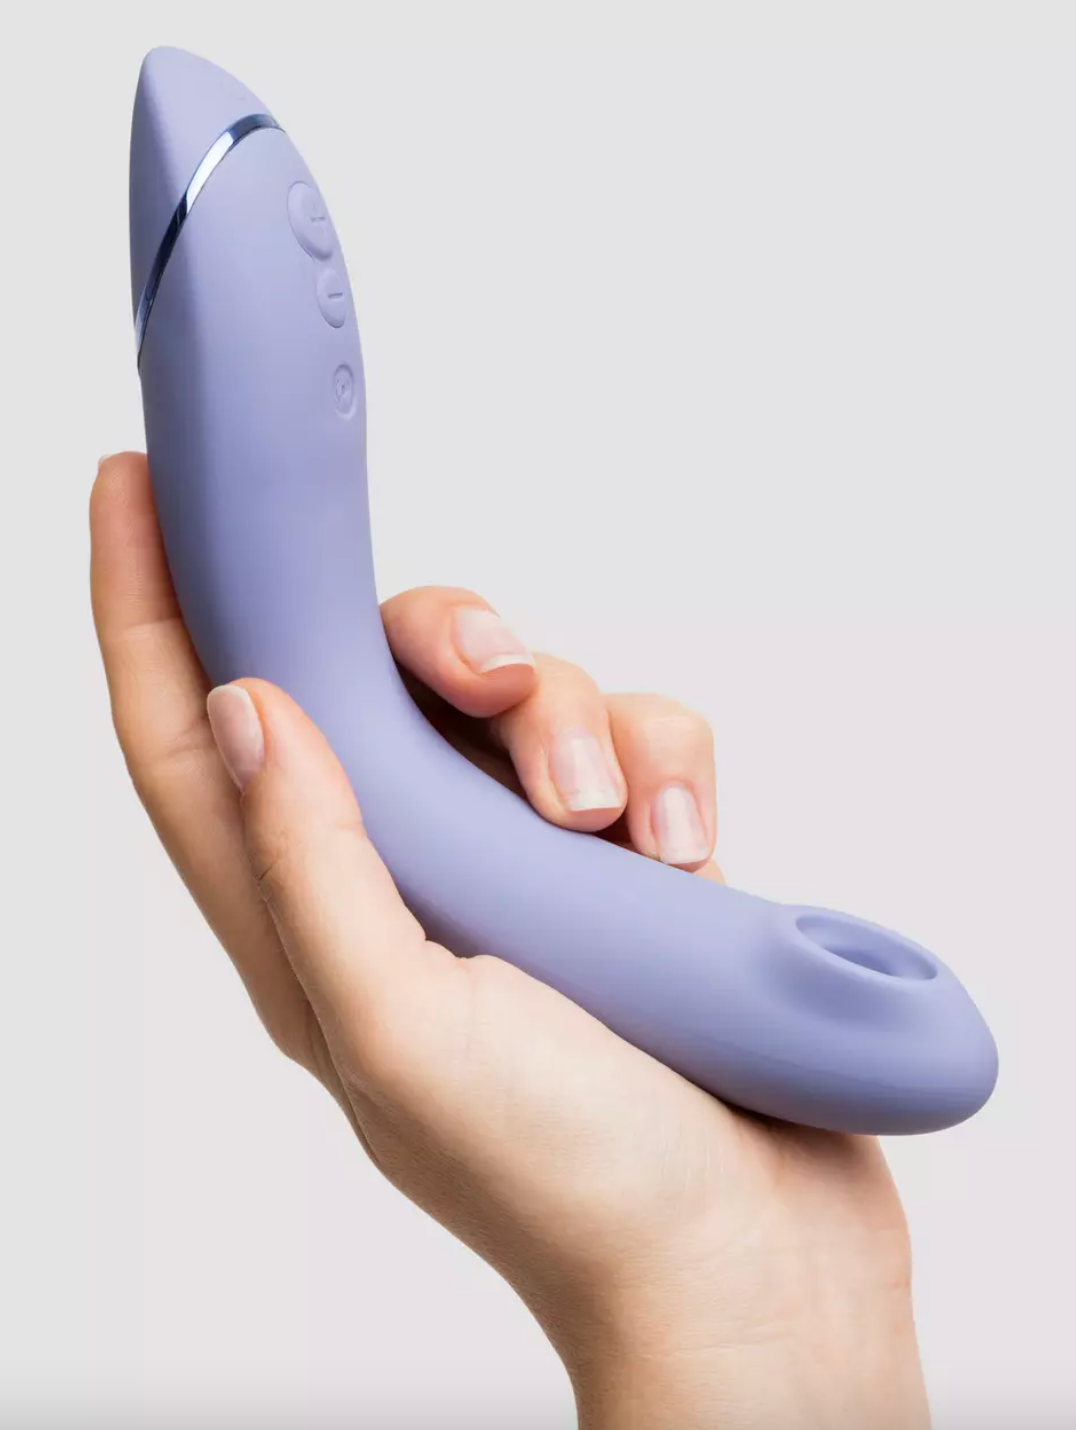 teen 3 amateurs clitoris suction devices